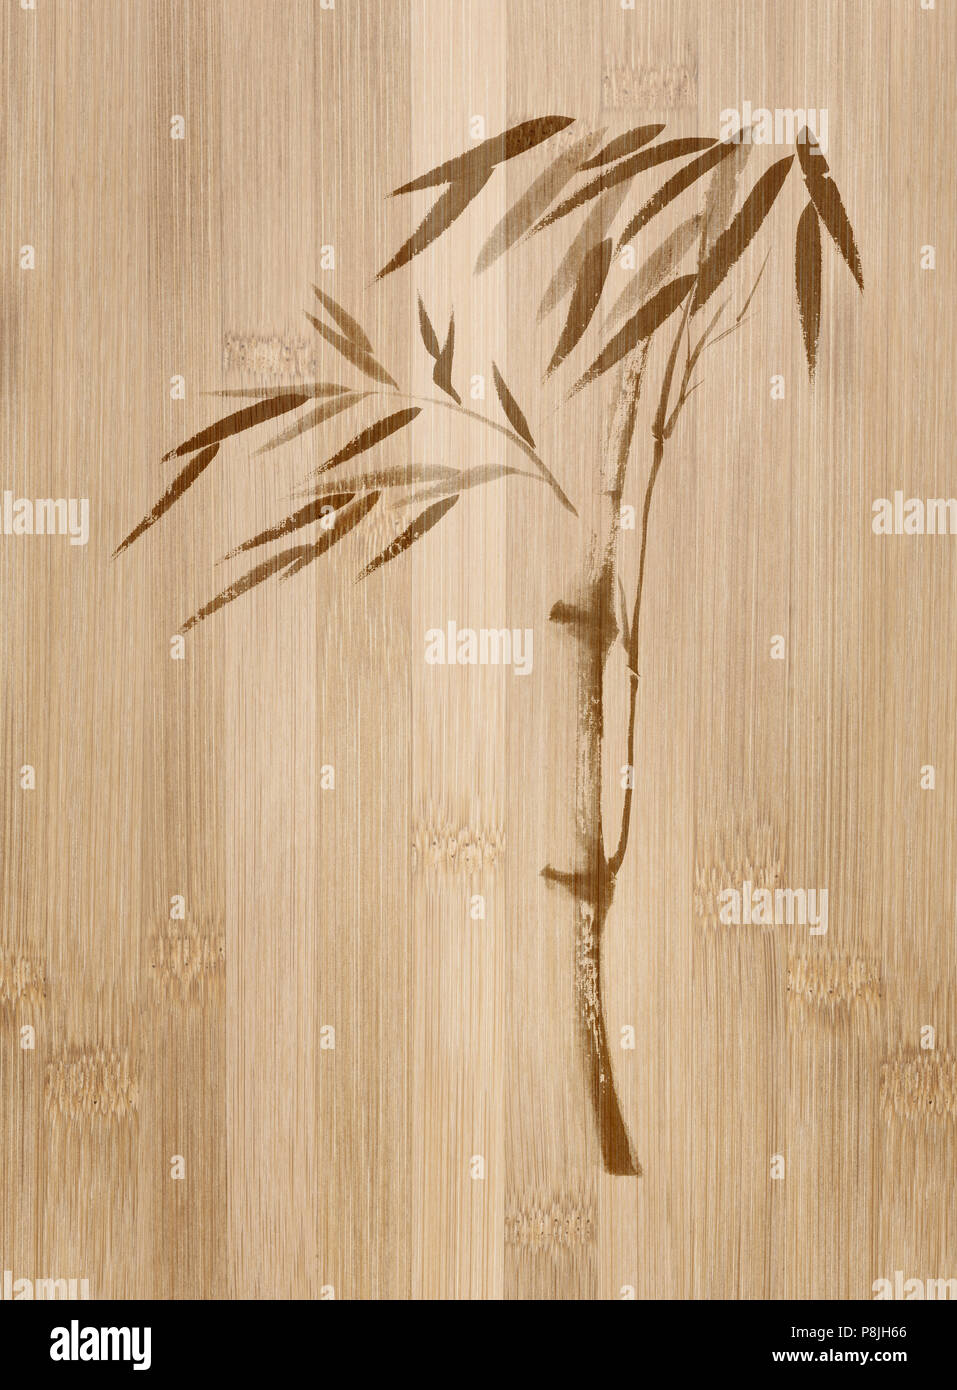 Orientalische Zen Stil Abbildung eines Bambus Stiel mit Blättern, Japanische Sumi-e ink Gestaltungsarbeit auf natürliche bambus holz- Hintergrund Stockfoto